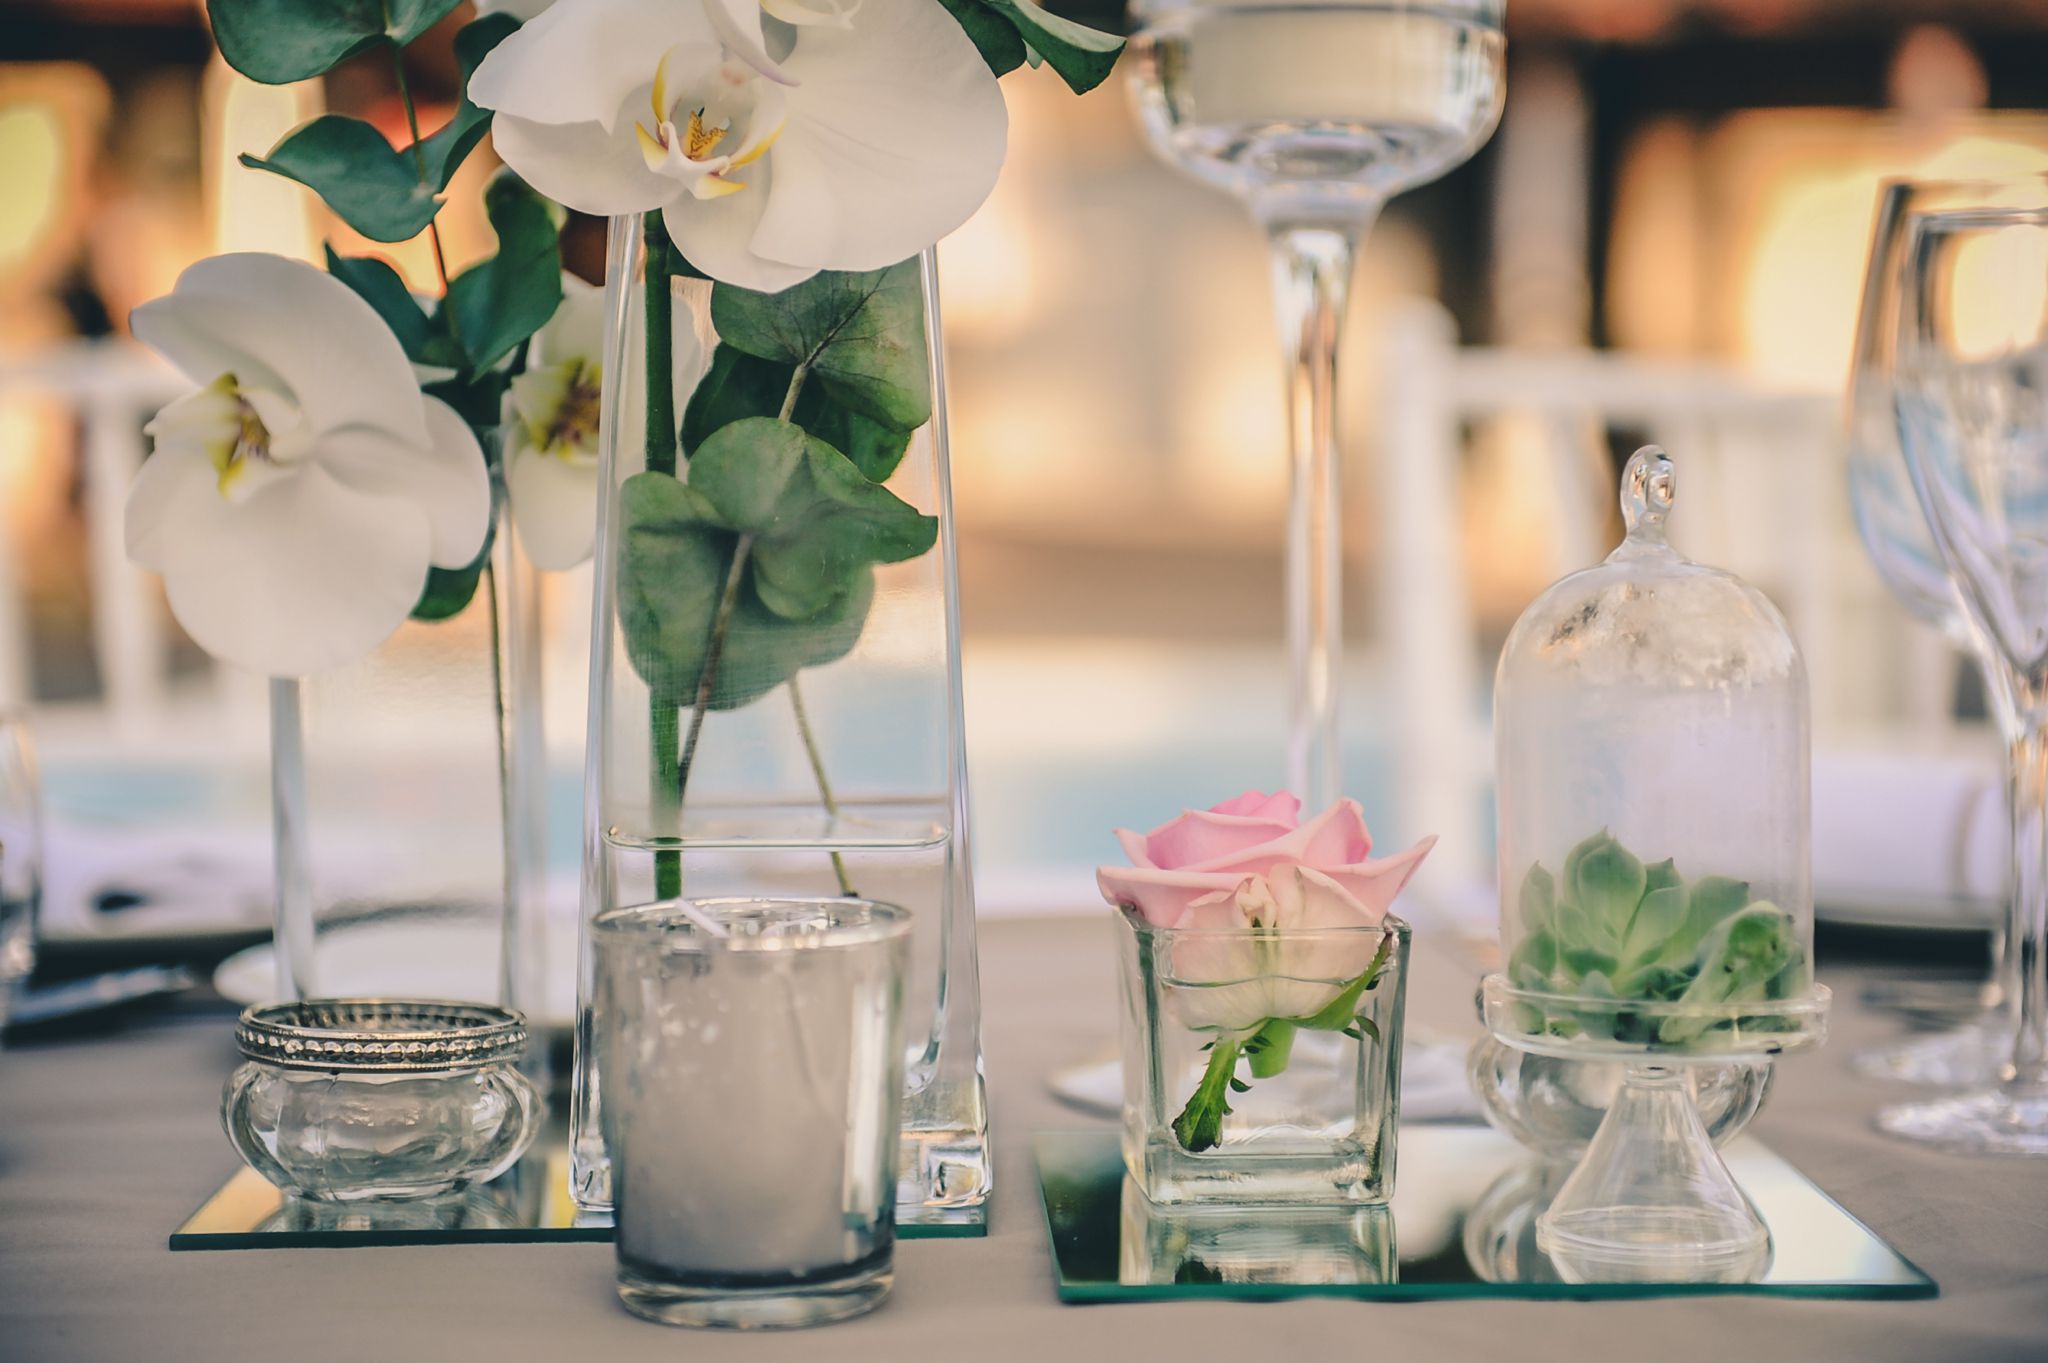 Centre de table et bouquet de mariage lors de réception au Cap Ferret au thème simple et chic.